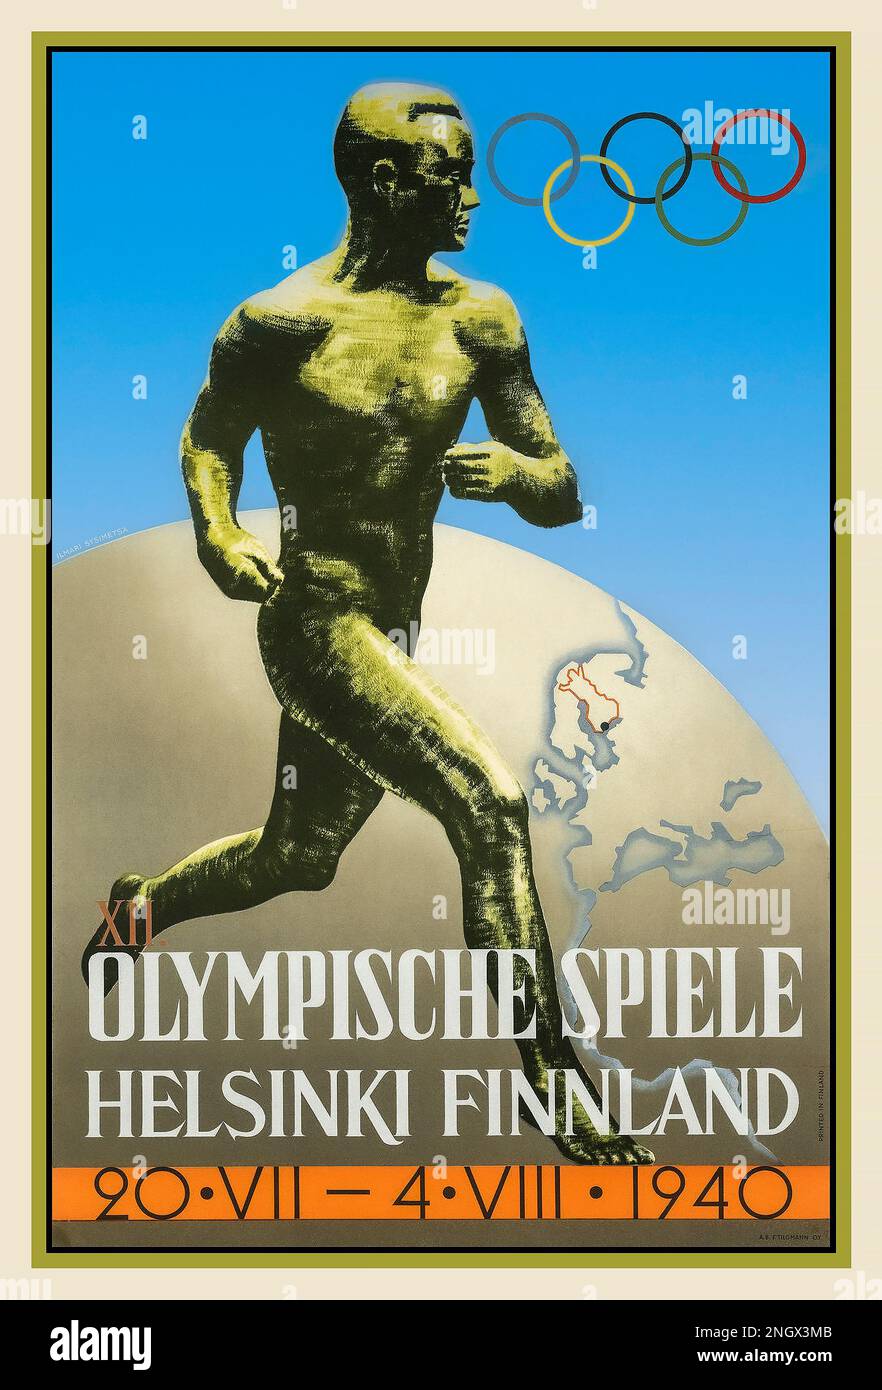 Olympische Spiele 1940 In Helsinki. Spiele und Poster, die aufgrund des bevorstehenden Zweiten Weltkriegs abgesagt wurden Poster von Ilmari Sysimetsä Sculpture ist der berühmte finnische Läufer Paavo Nurmi mit 9 Gold- und 3 Silbermedaillen der Olympischen Spiele. Ein ähnliches Poster wurde für die Olympischen Spiele nach dem Krieg 1952 verwendet Stockfoto